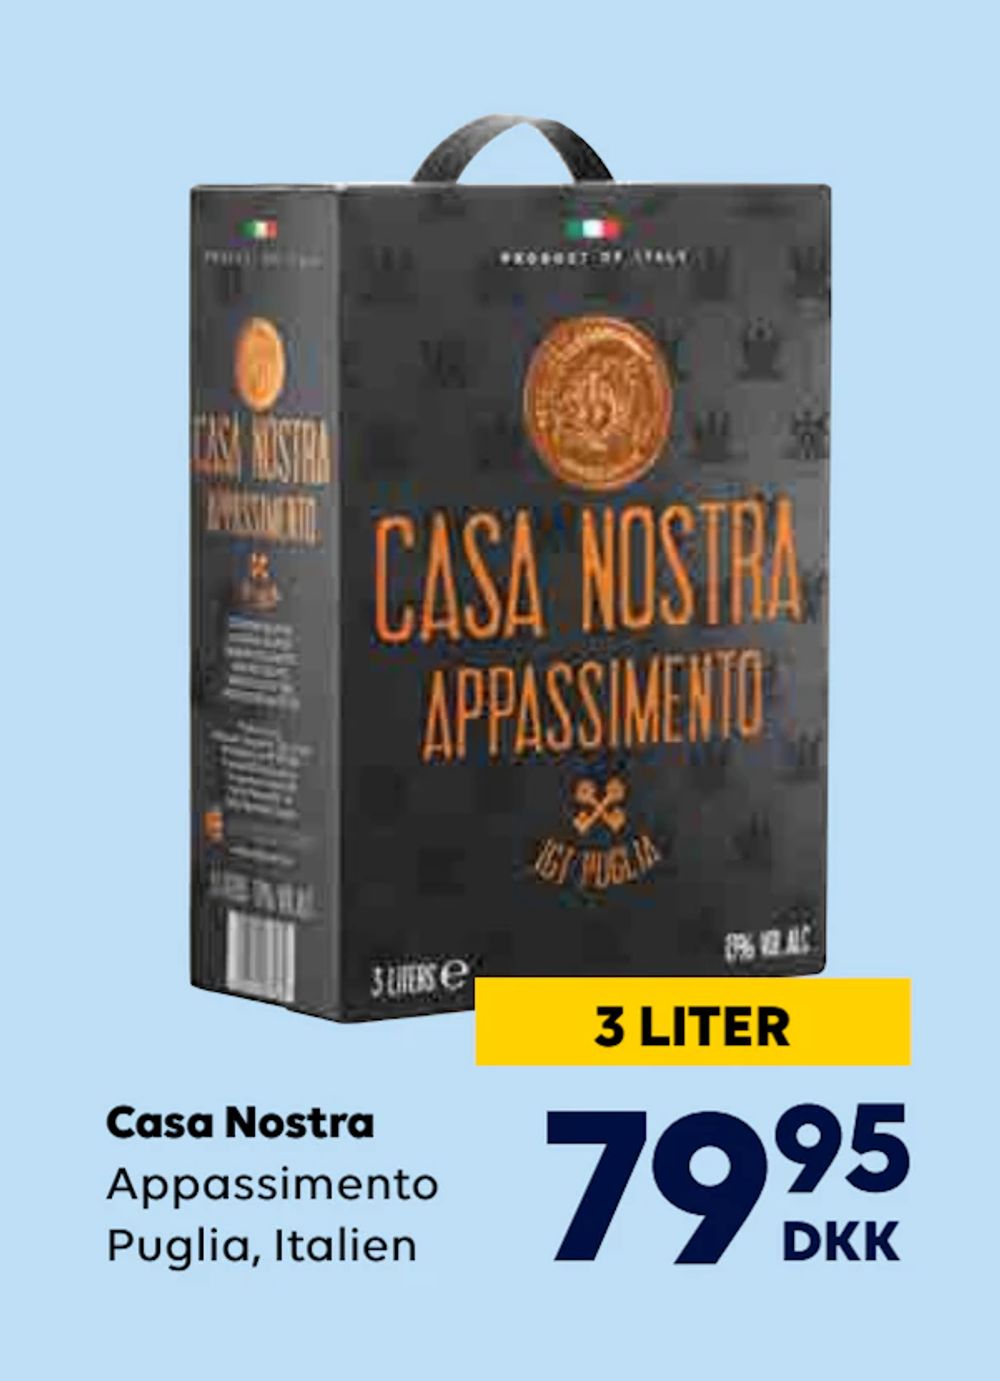 Tilbud på Casa Nostra fra BorderShop til 79,95 kr.